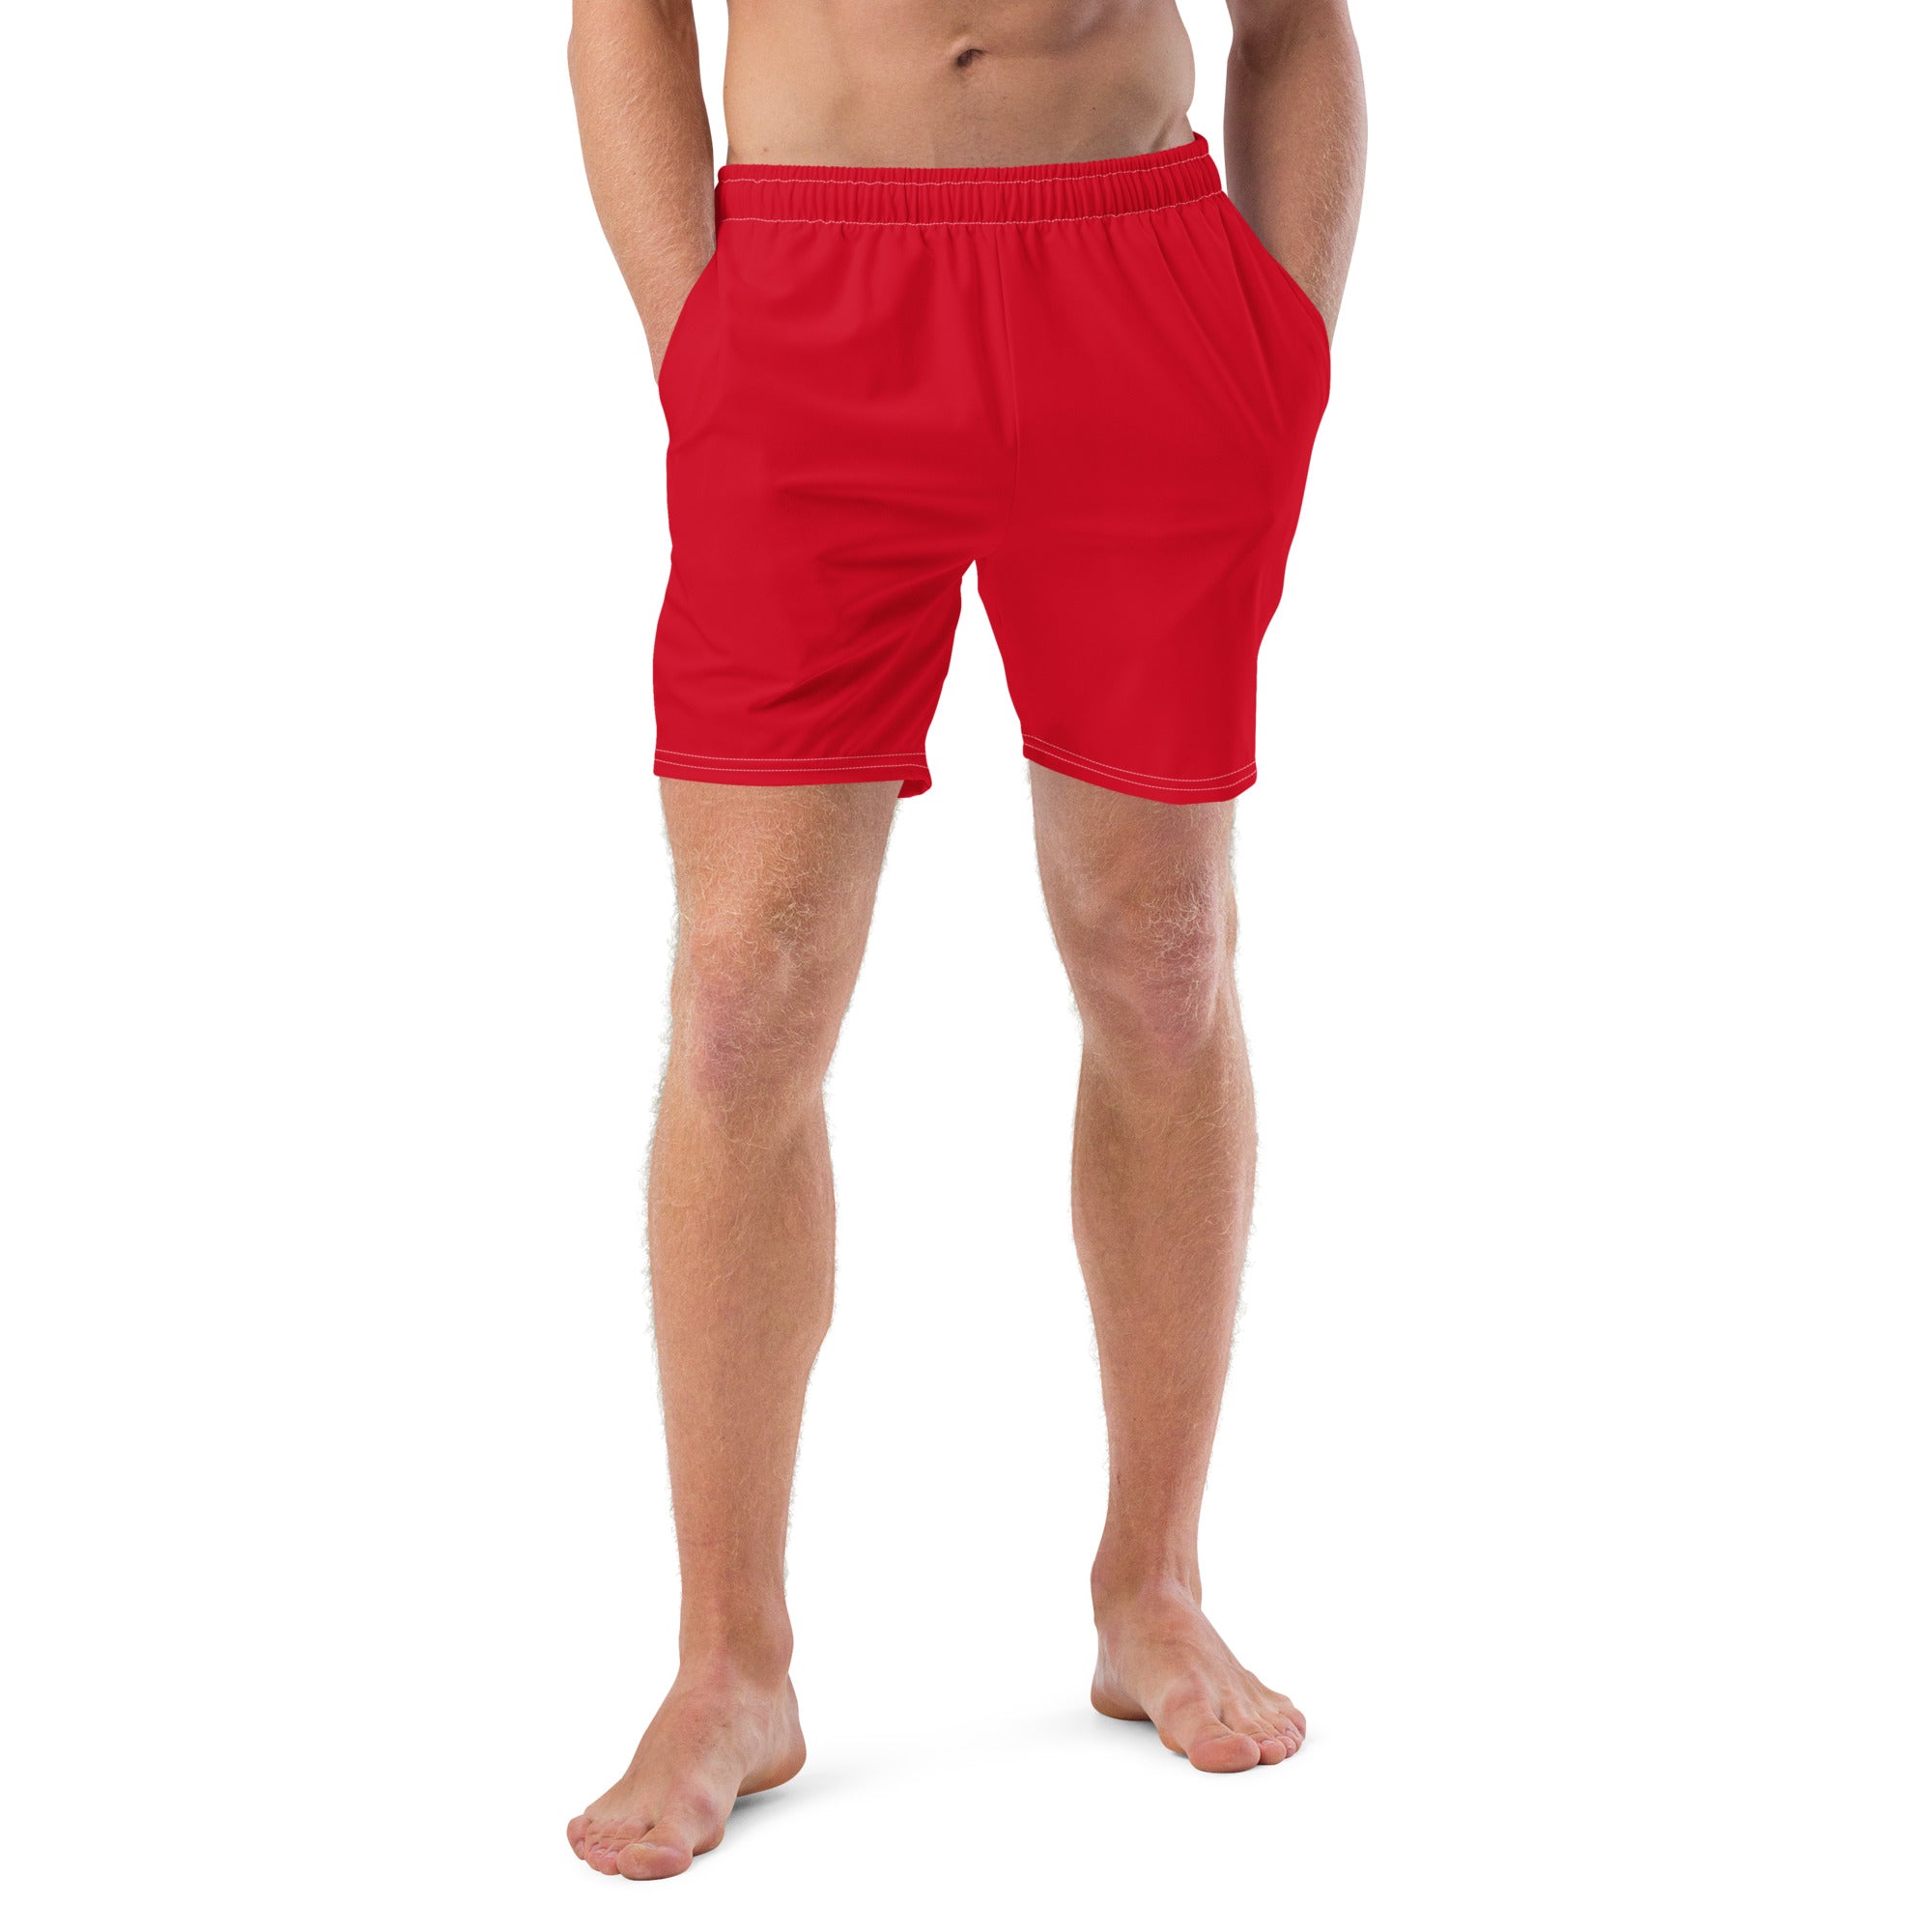 'Cherry Red' men's swim trunks